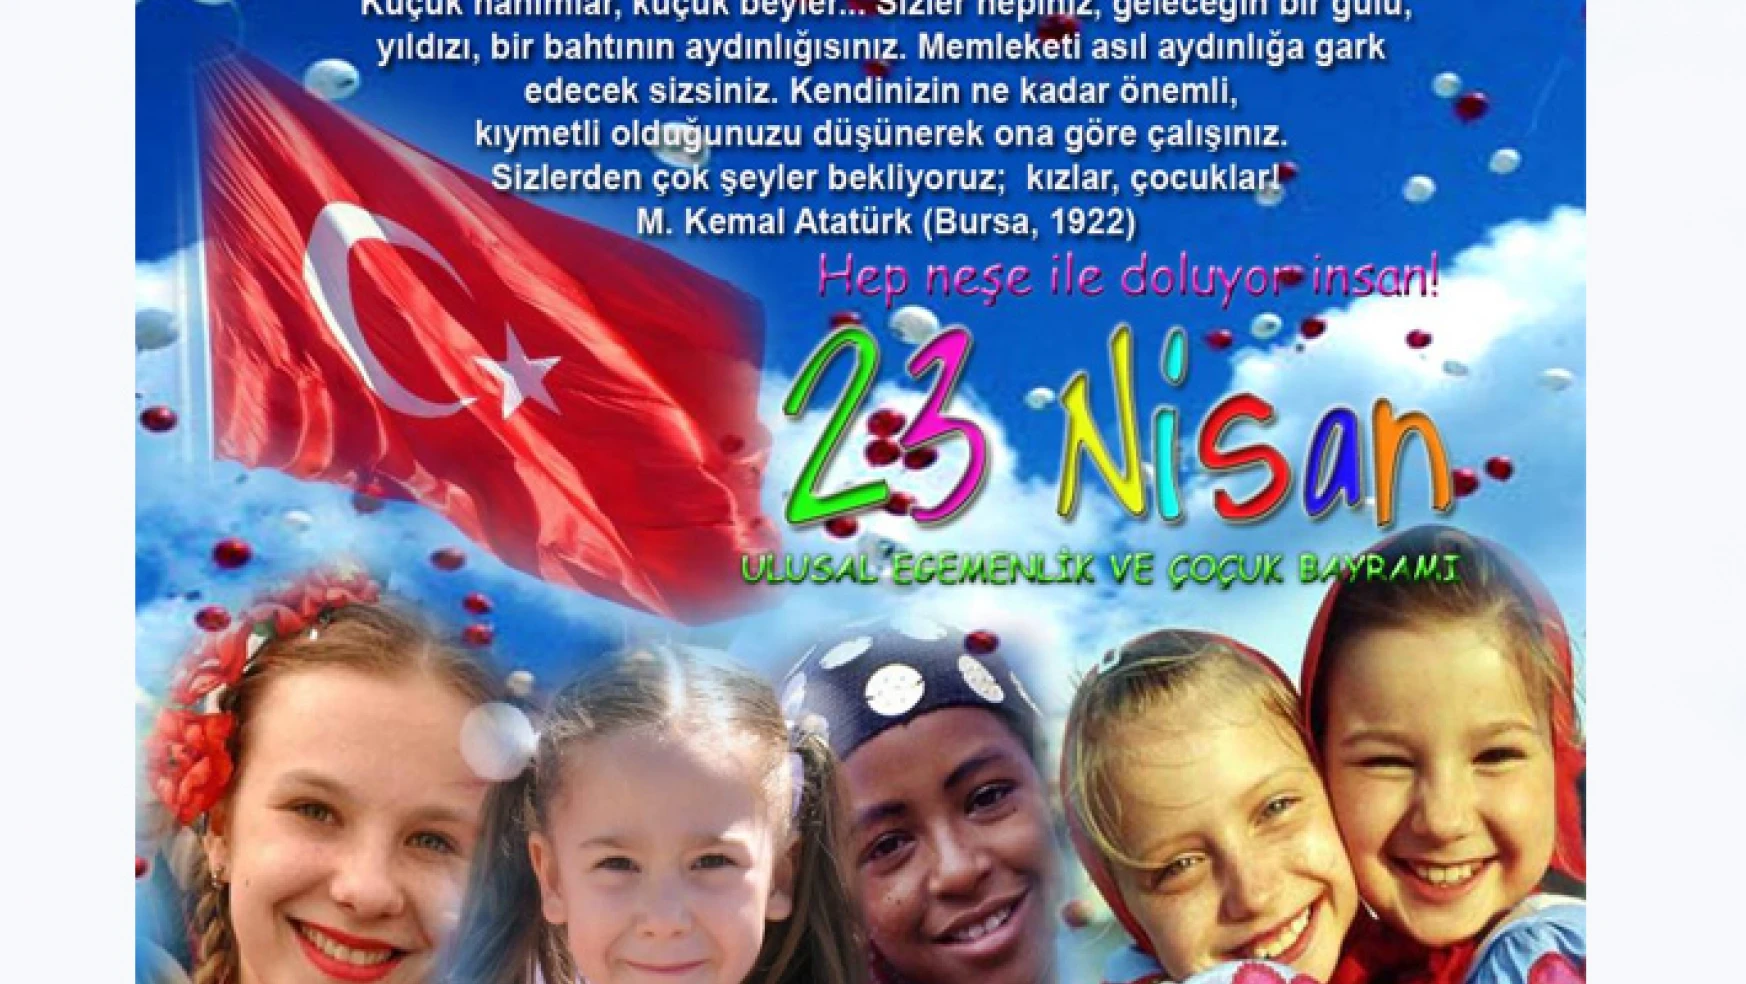 Ulusal Egemenlik ve Çocuk Bayramımız Kutlu Olsun